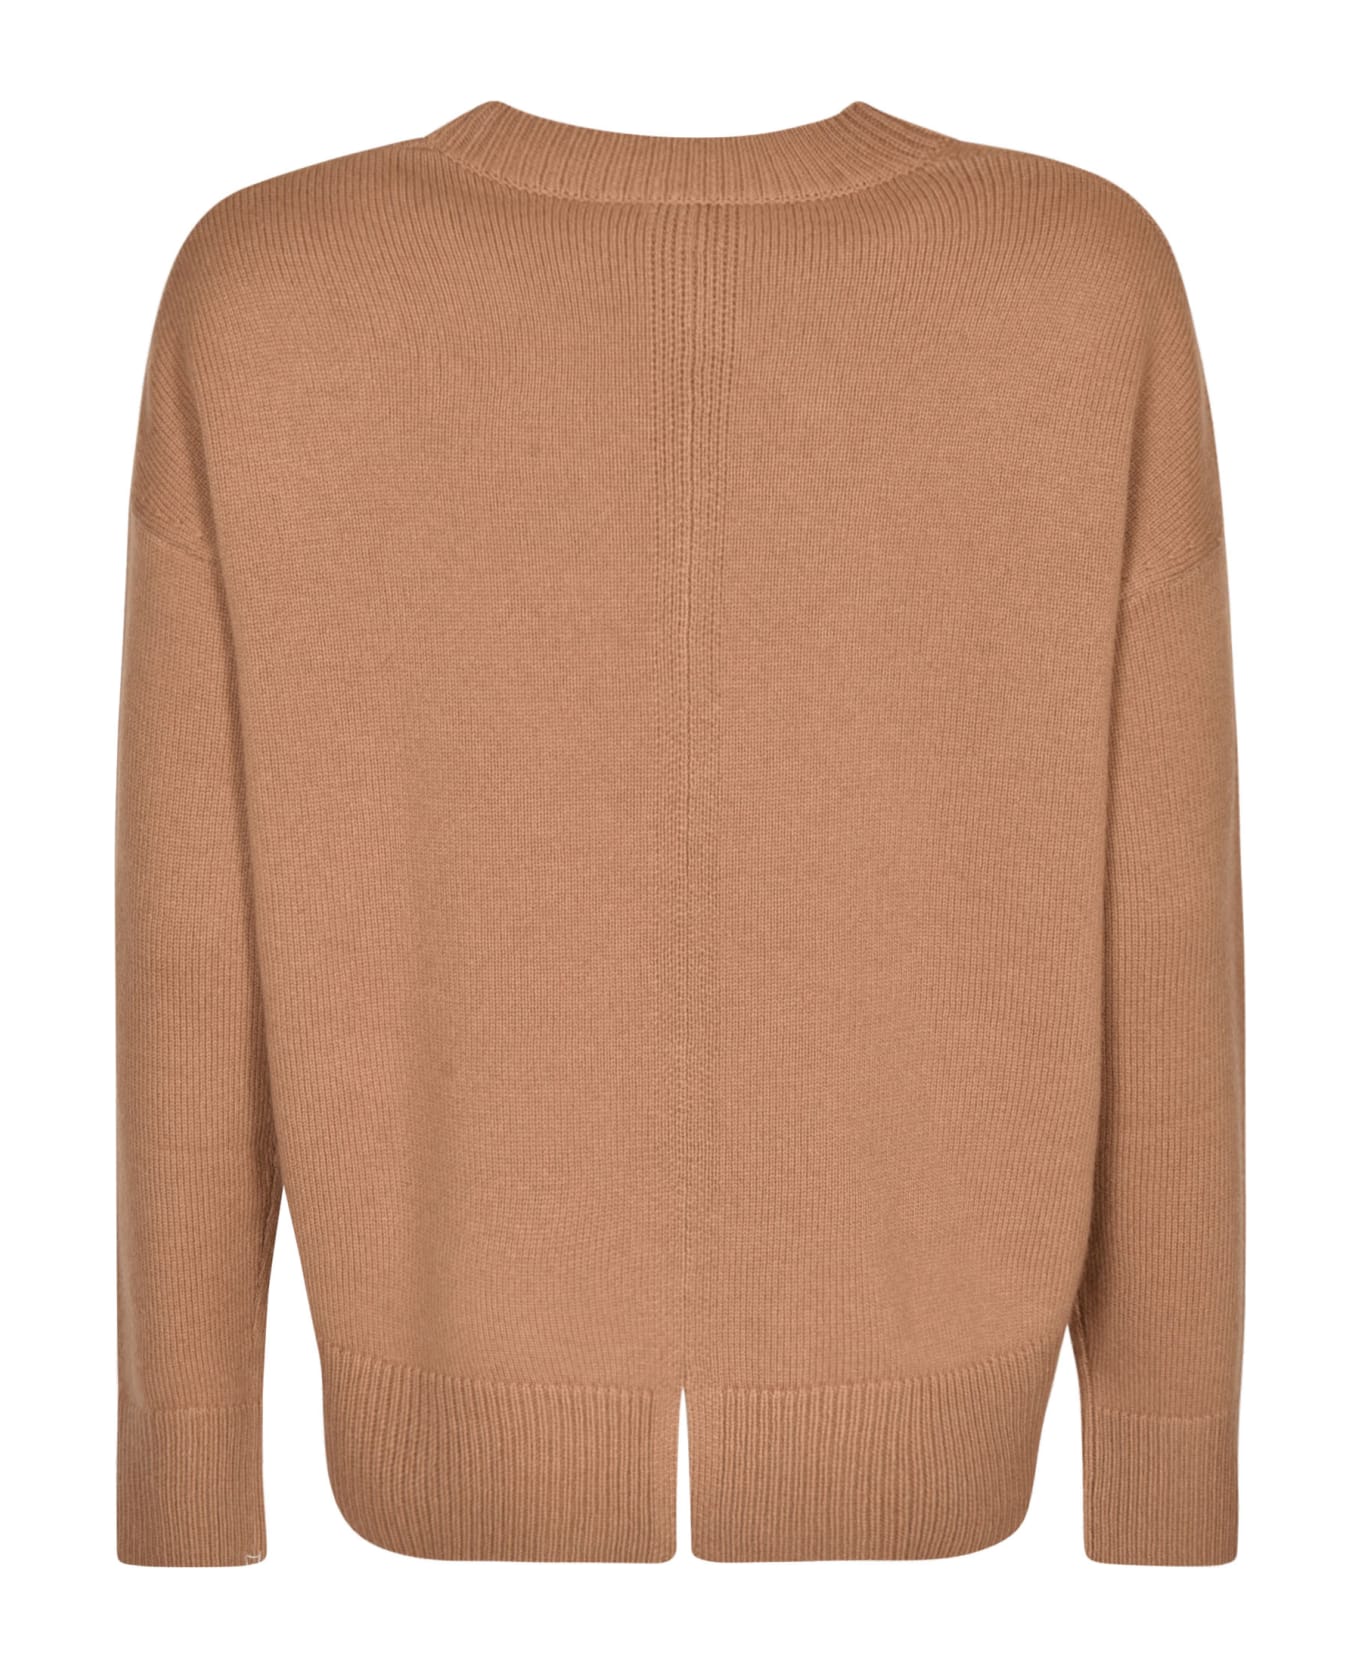 'S Max Mara Venezia Sweater - Camel